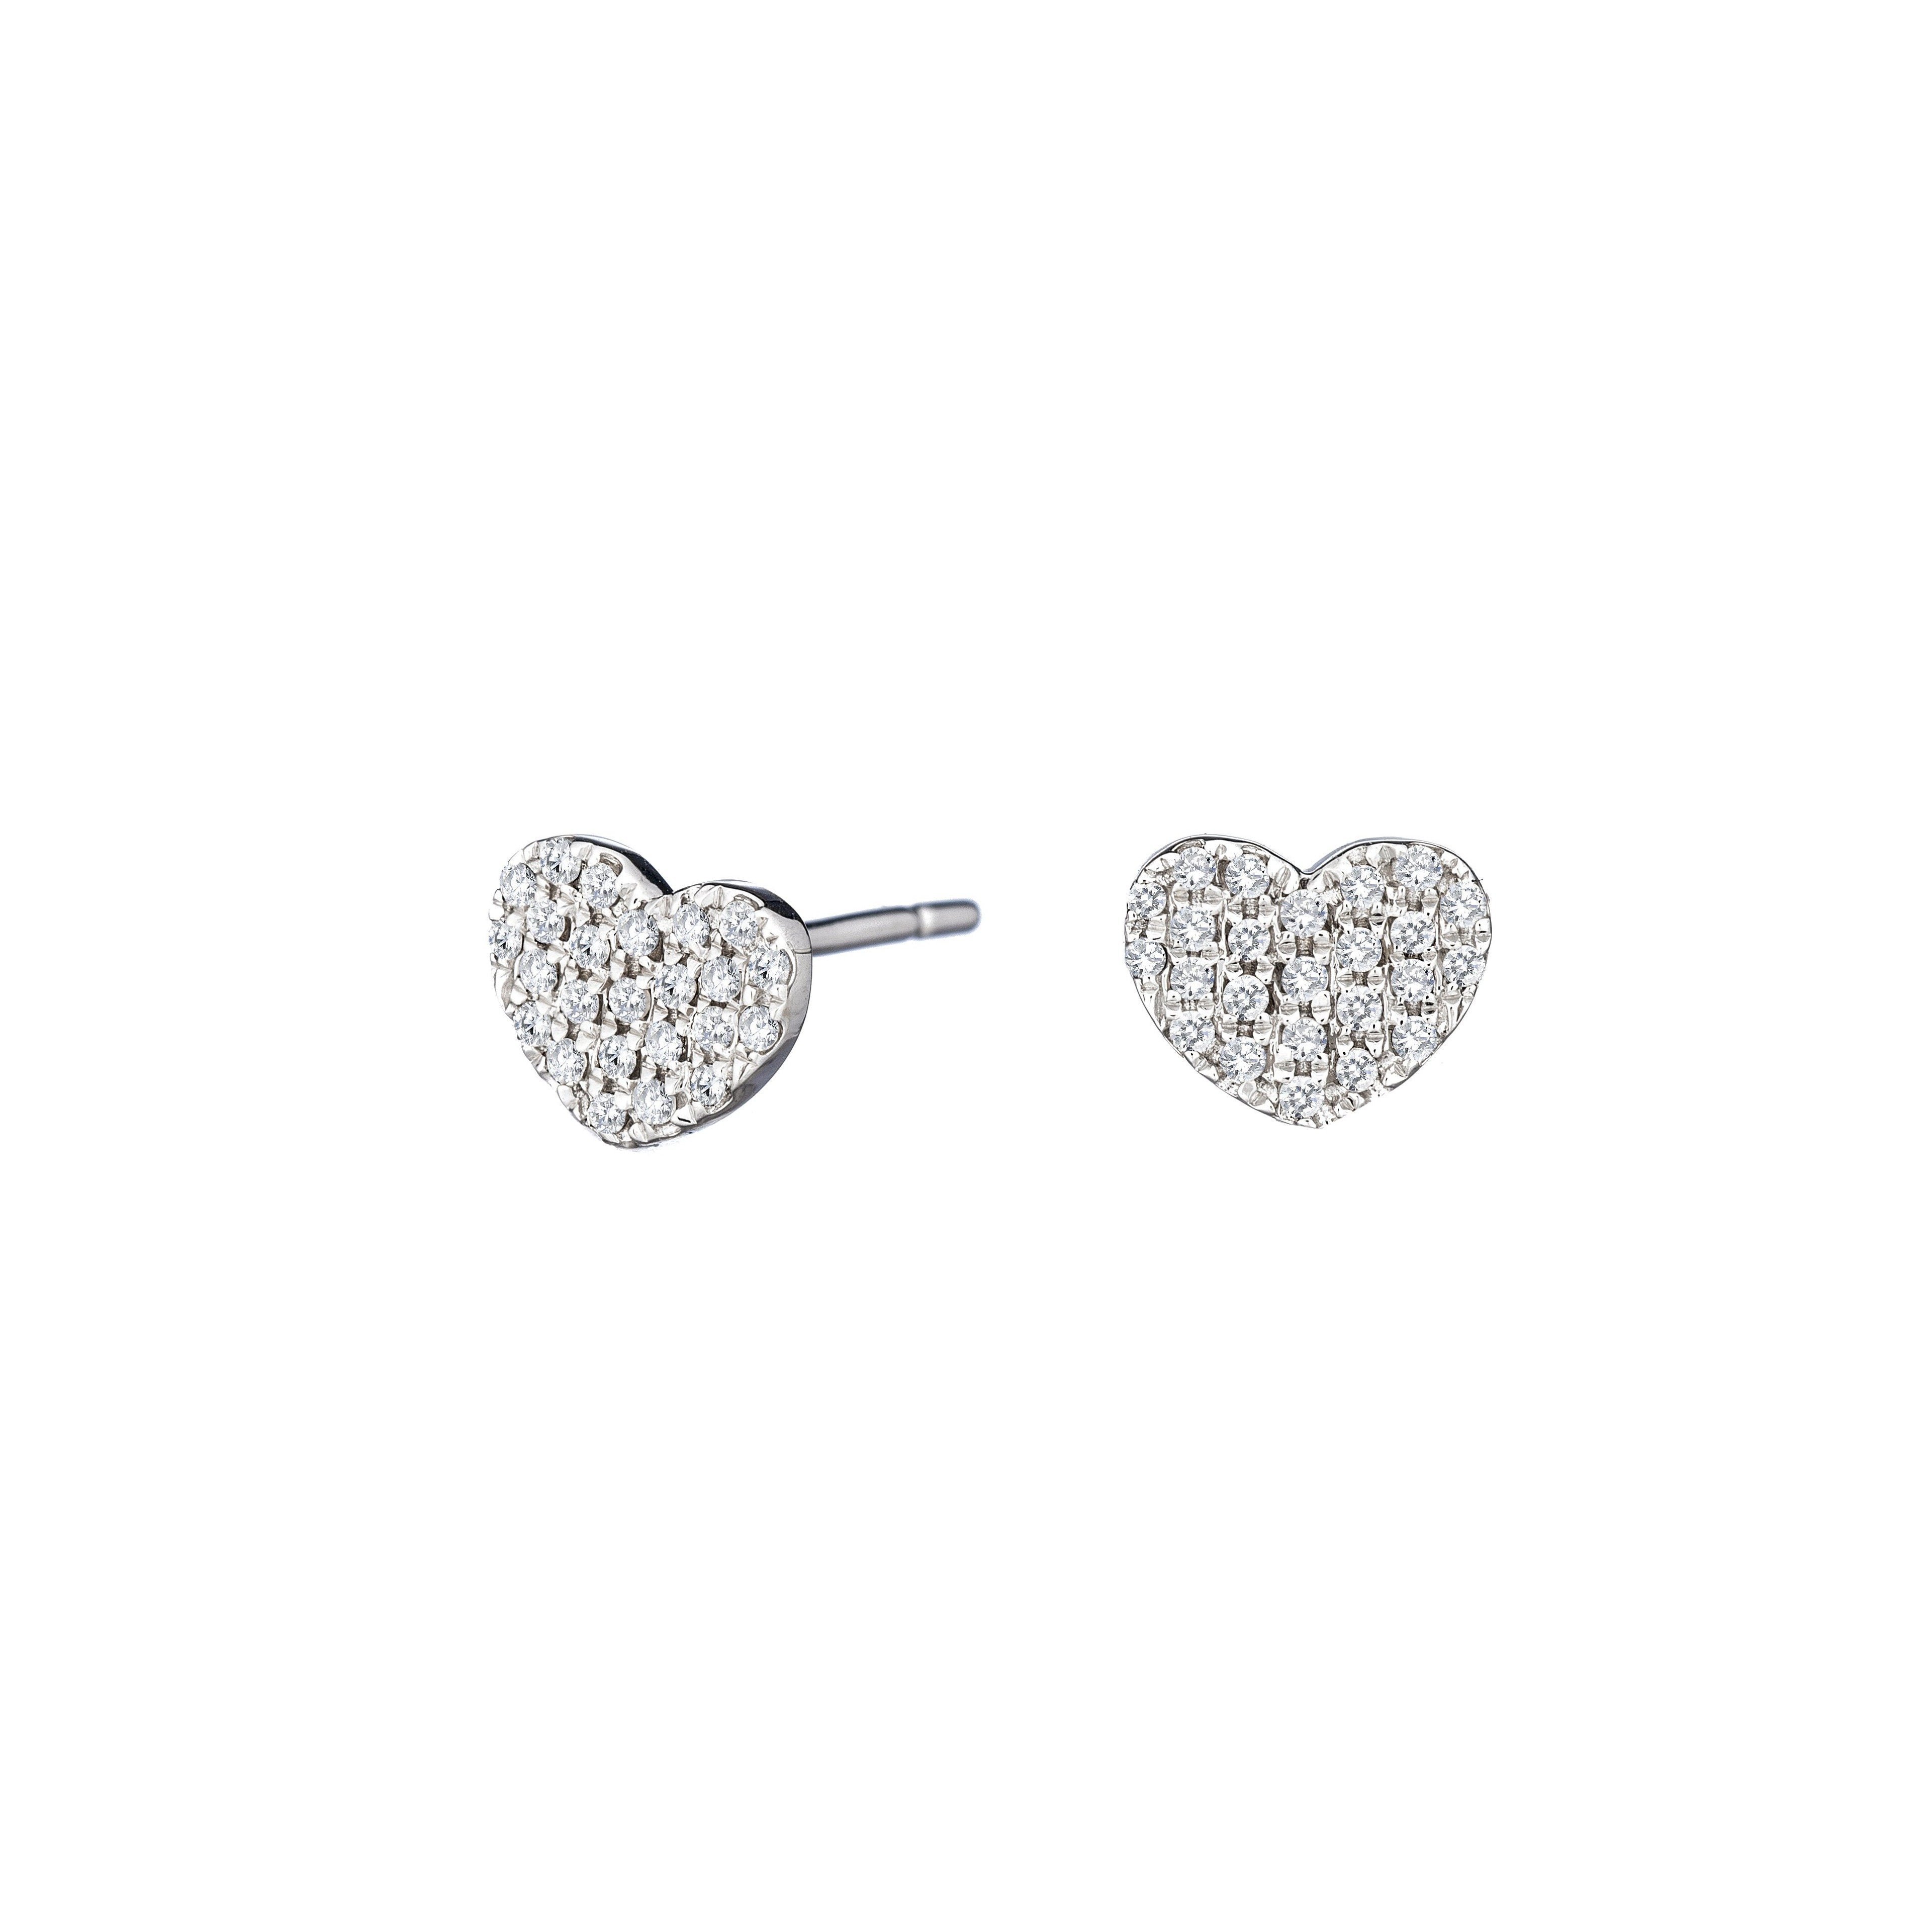 Heart Shaped Earrings with Diamond Set in 14k Gold – Alef Bet by Paula